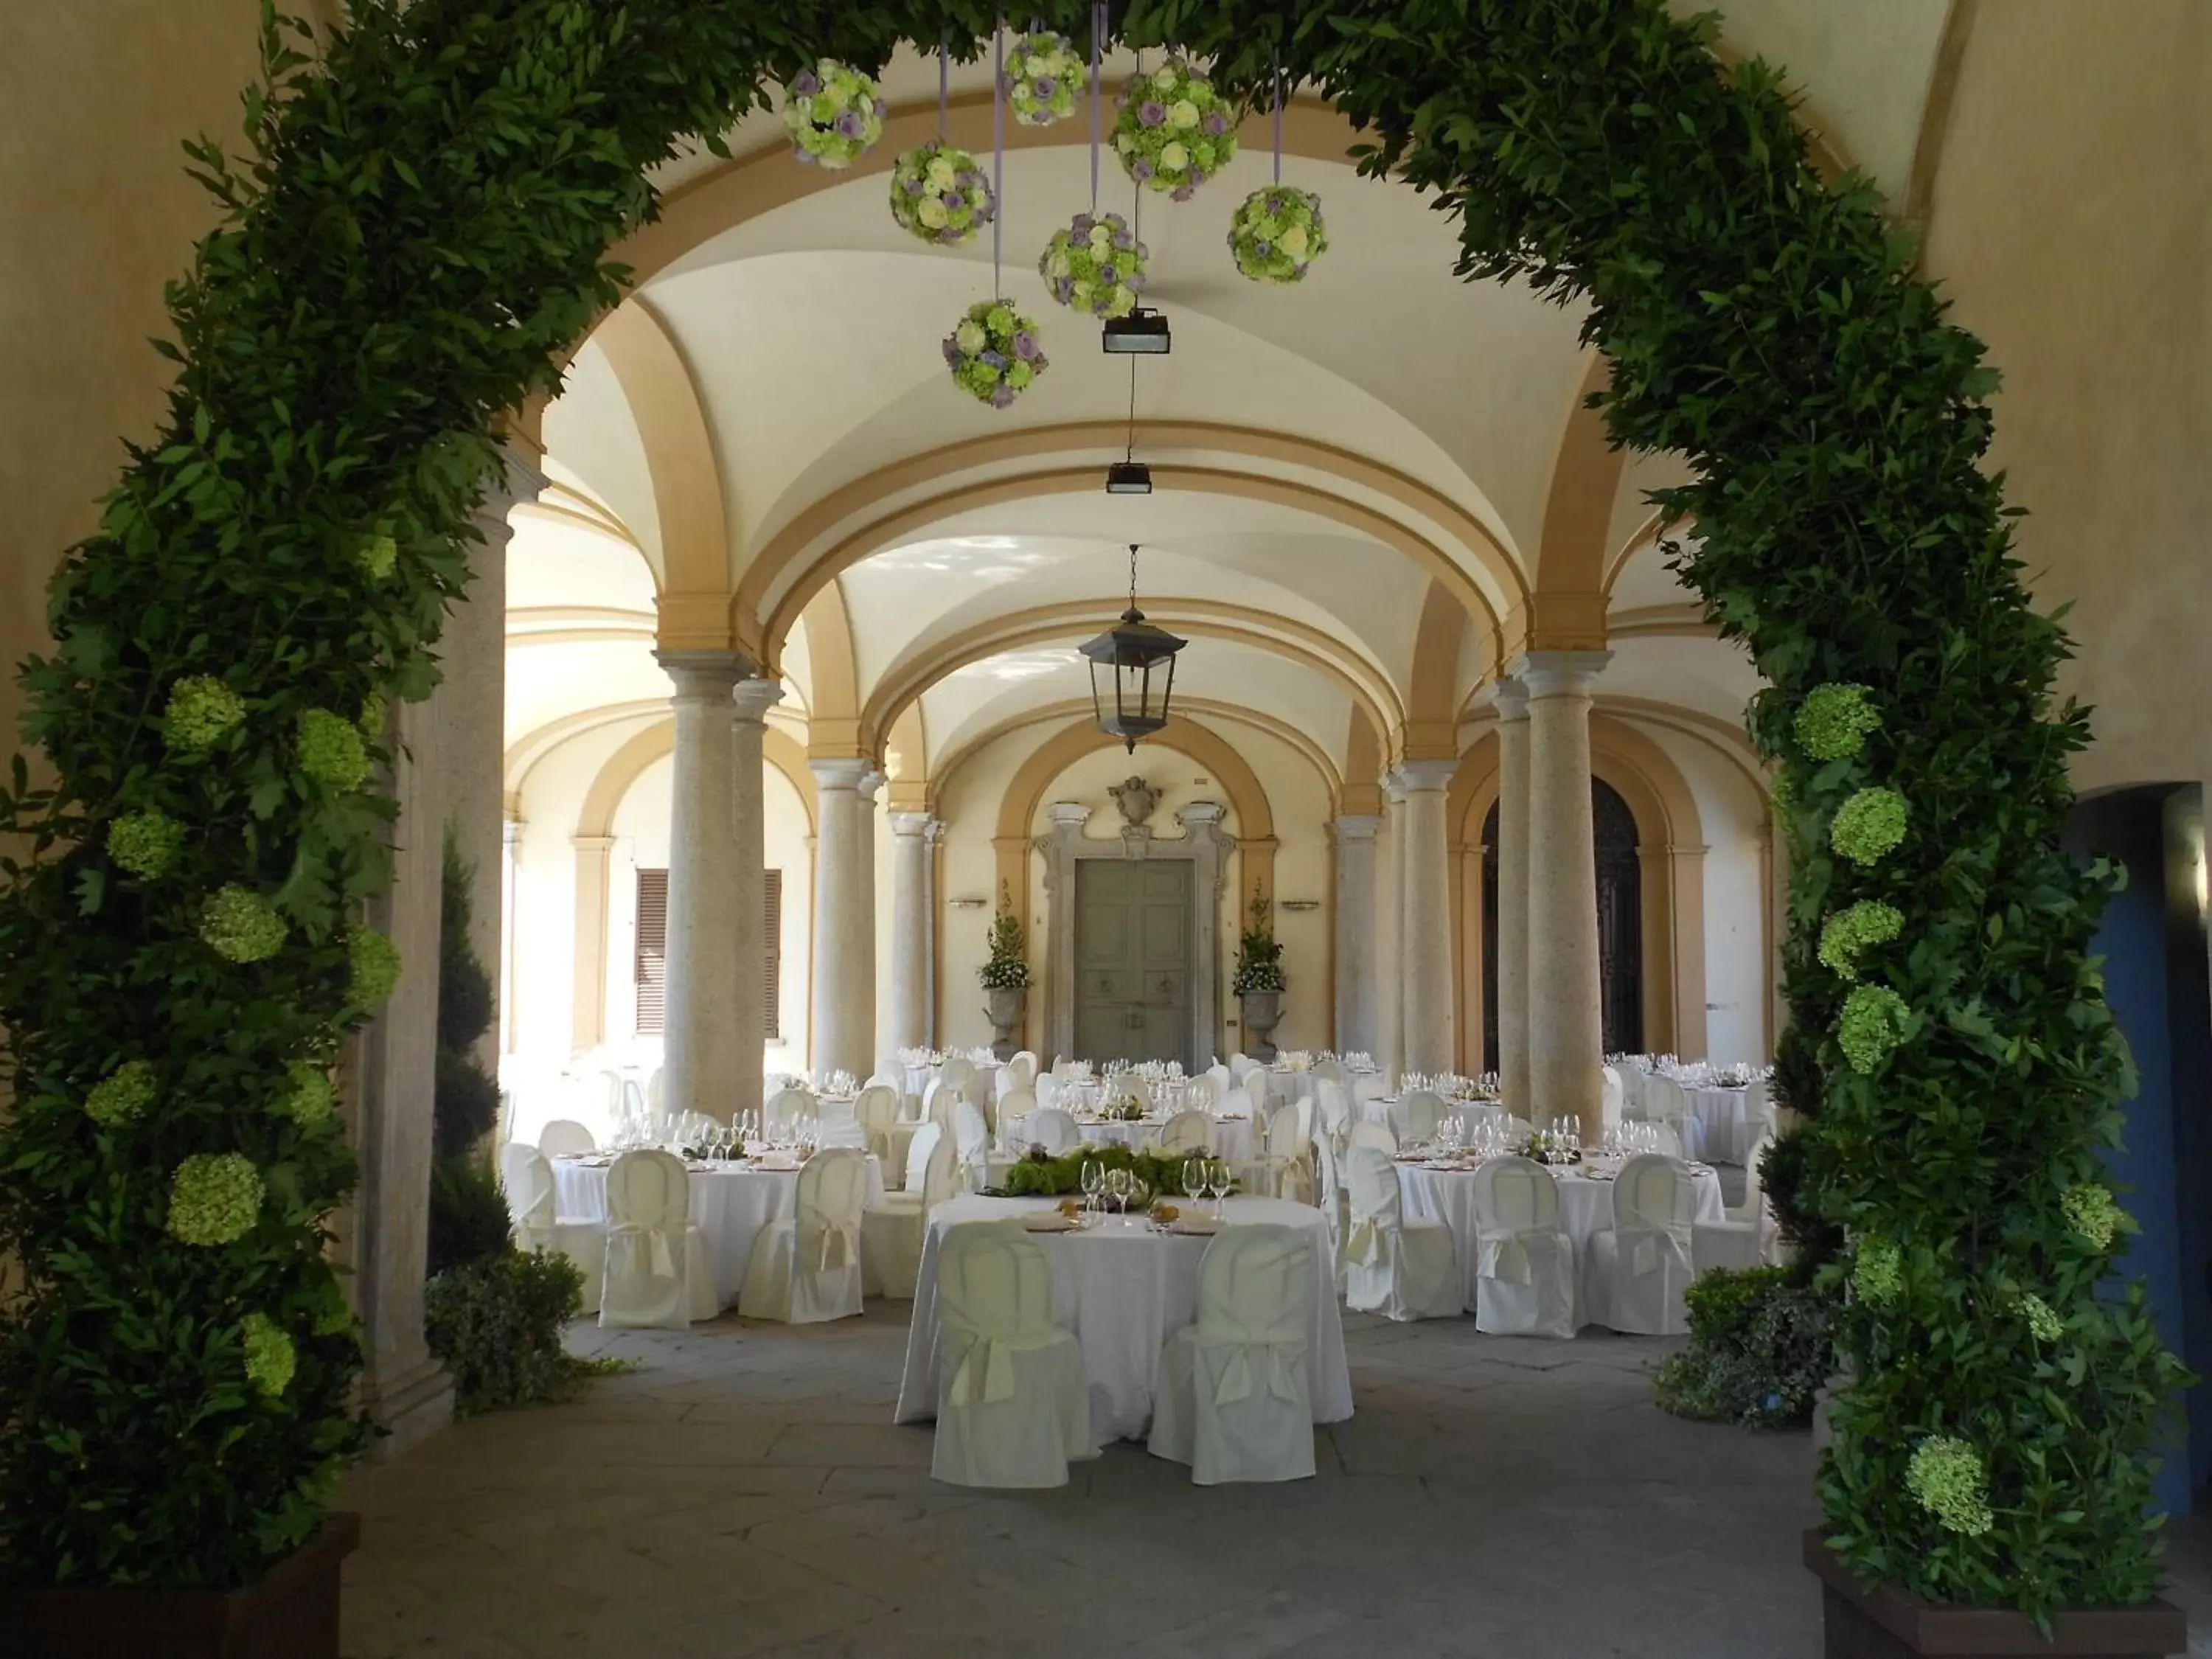 Banquet/Function facilities, Banquet Facilities in Villa Cagnola